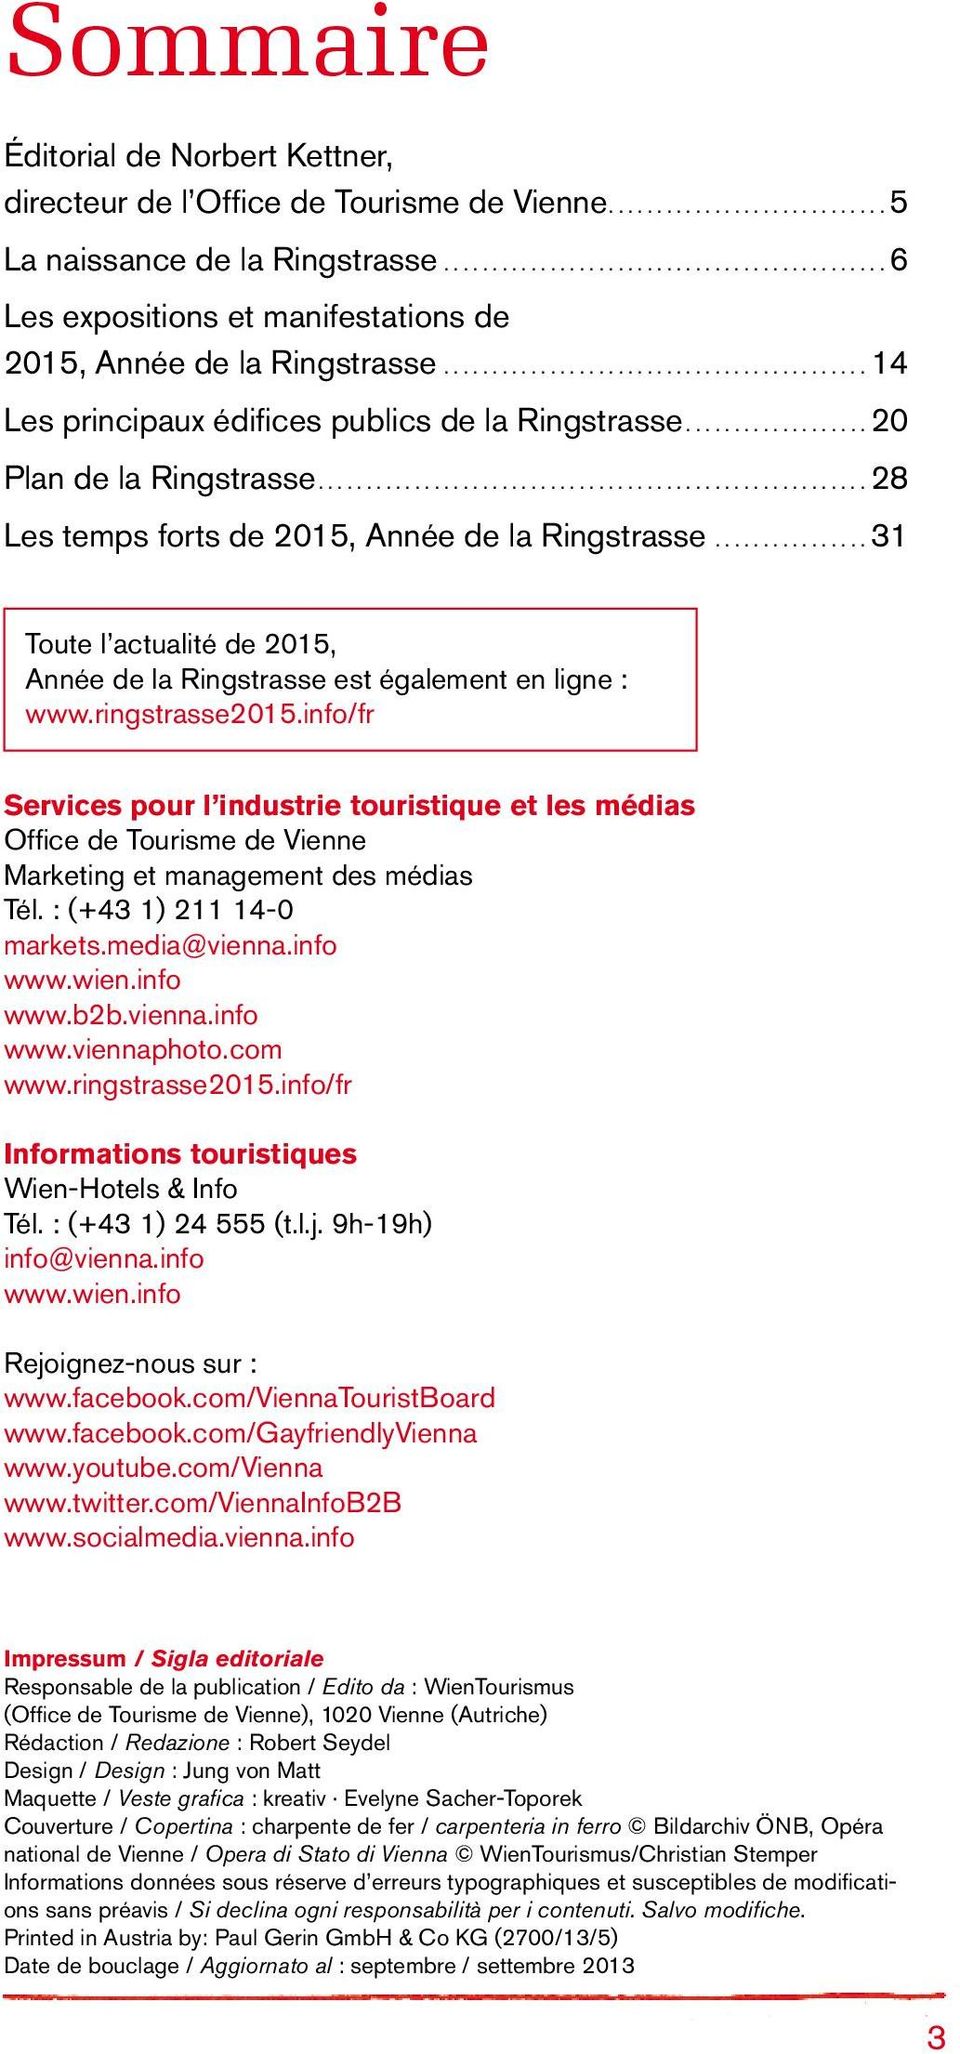 ligne : www.ringstrasse2015.info/fr Services pour l industrie touristique et les médias Office de Tourisme de Vienne Marketing et management des médias Tél. : (+43 1) 211 14-0 markets.media@vienna.